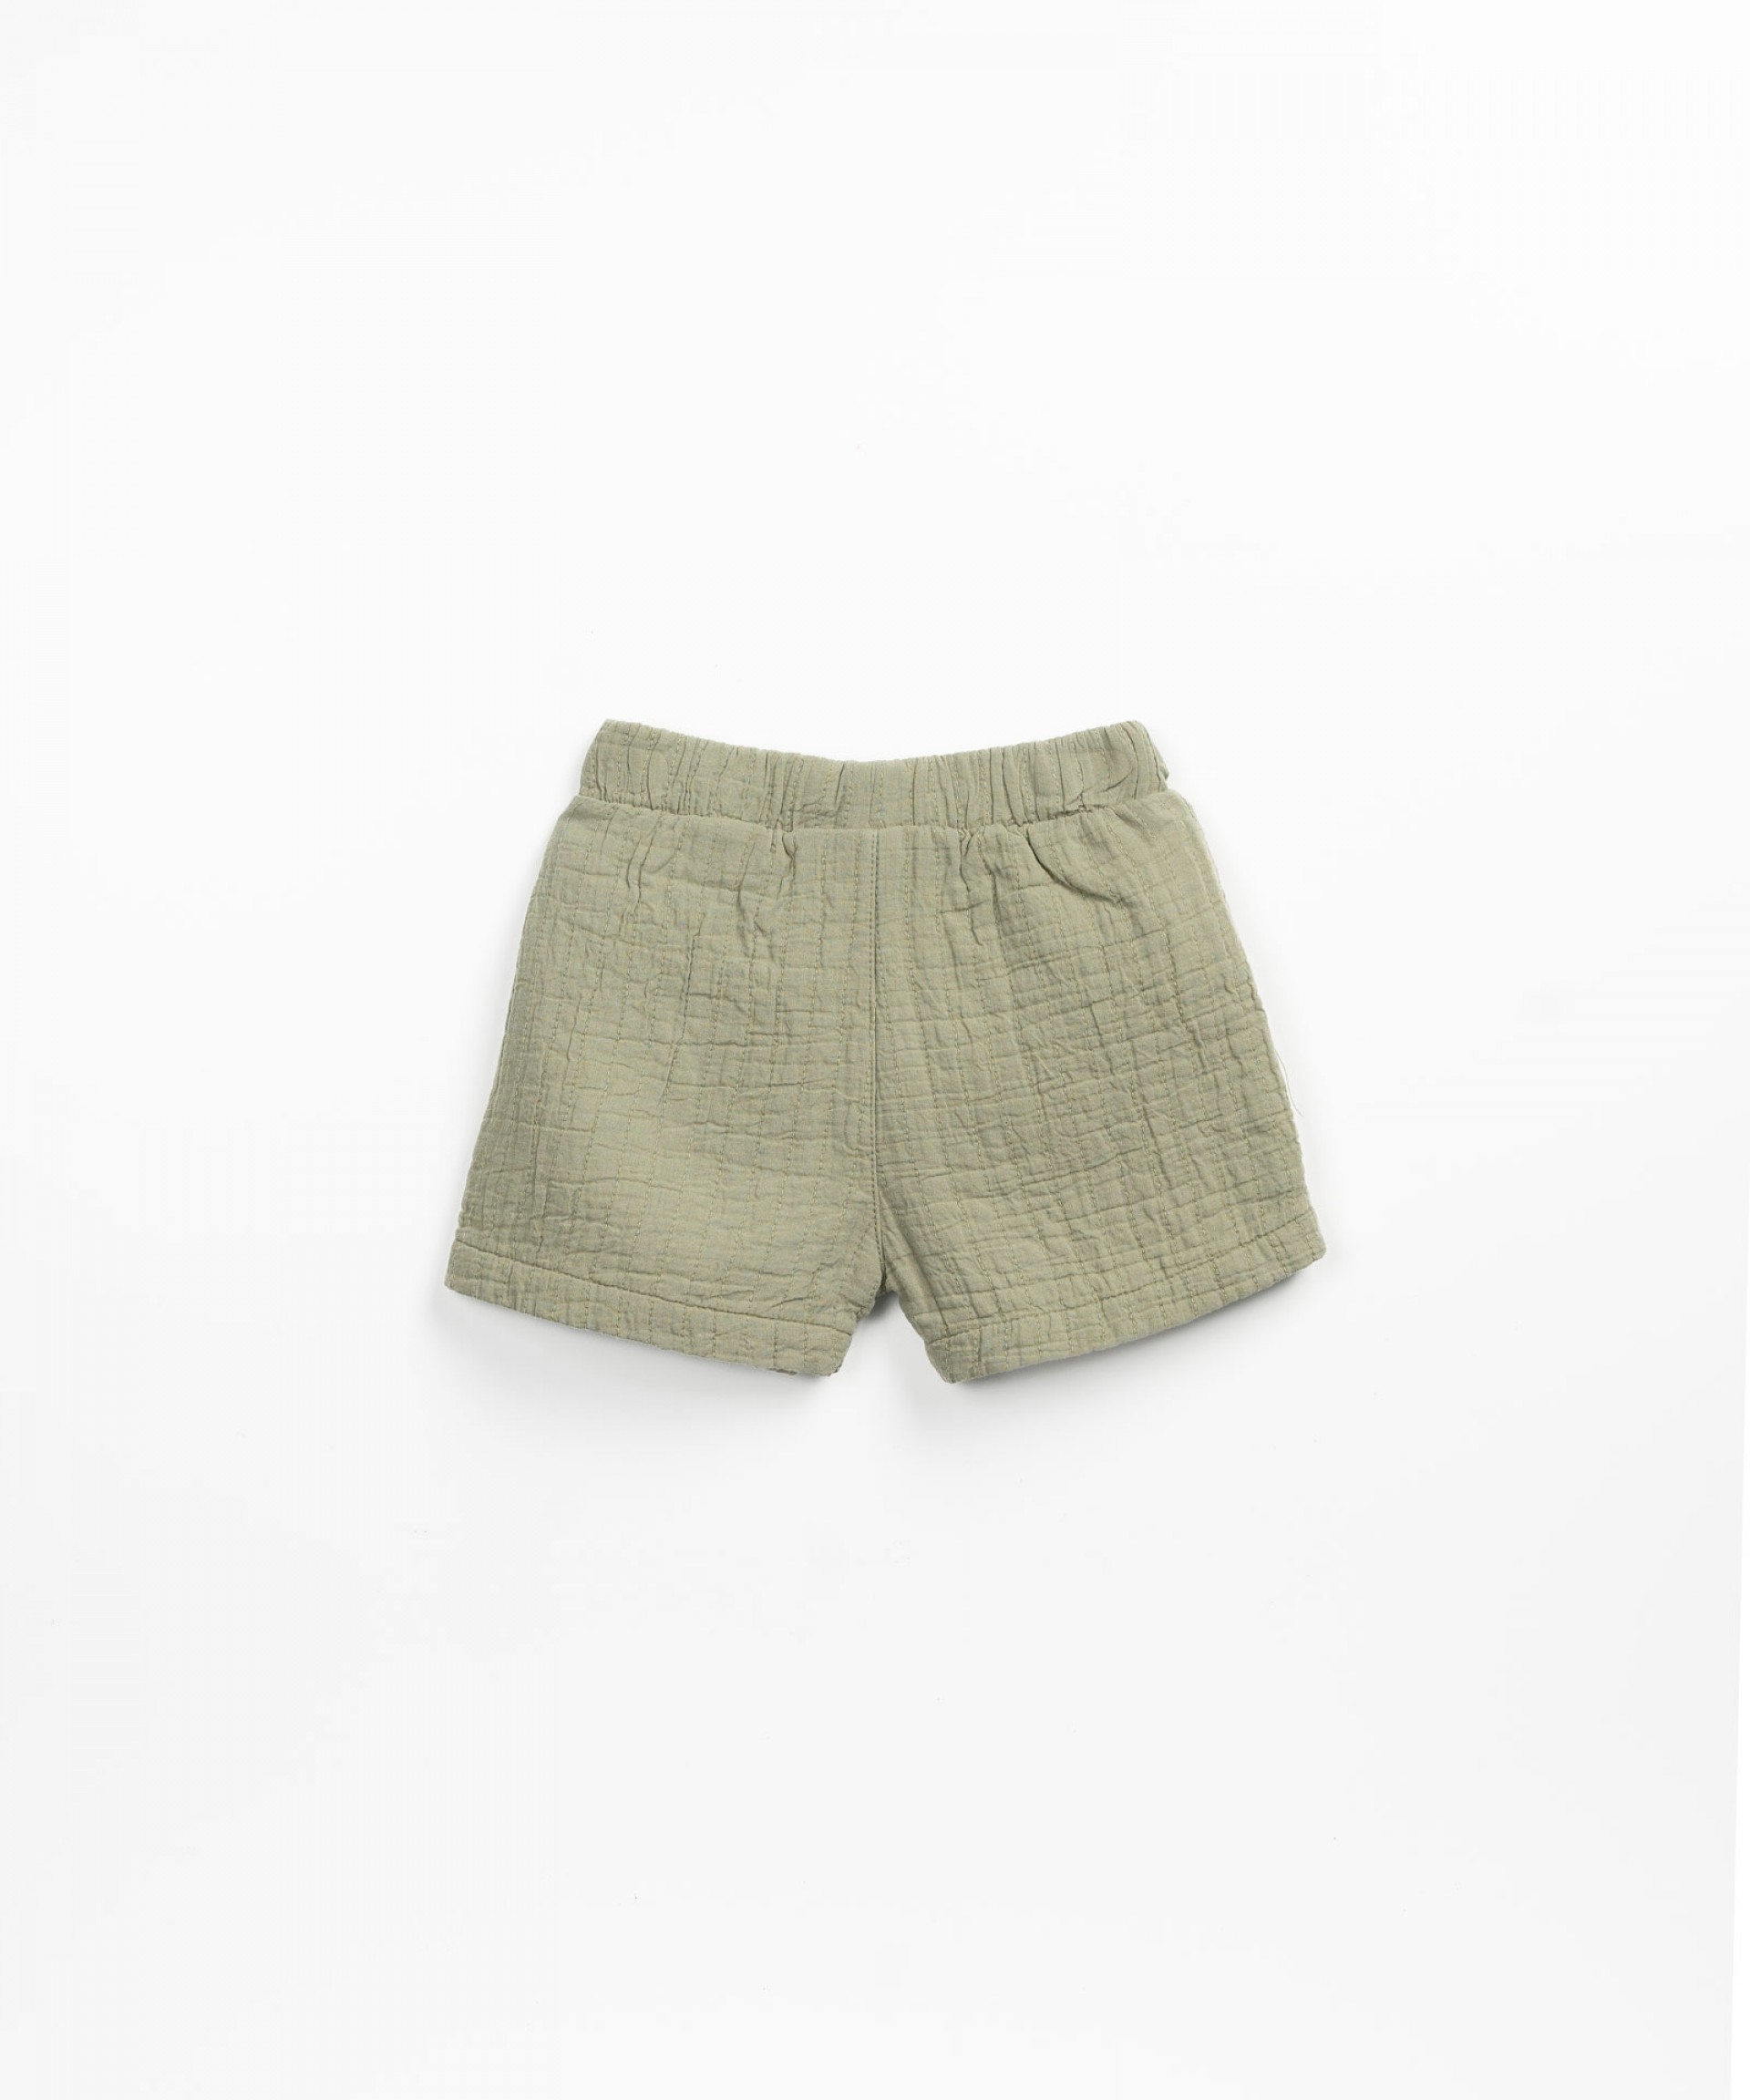 Pantaloncini con cintura elastica e cordoncino decorativo | Textile Art